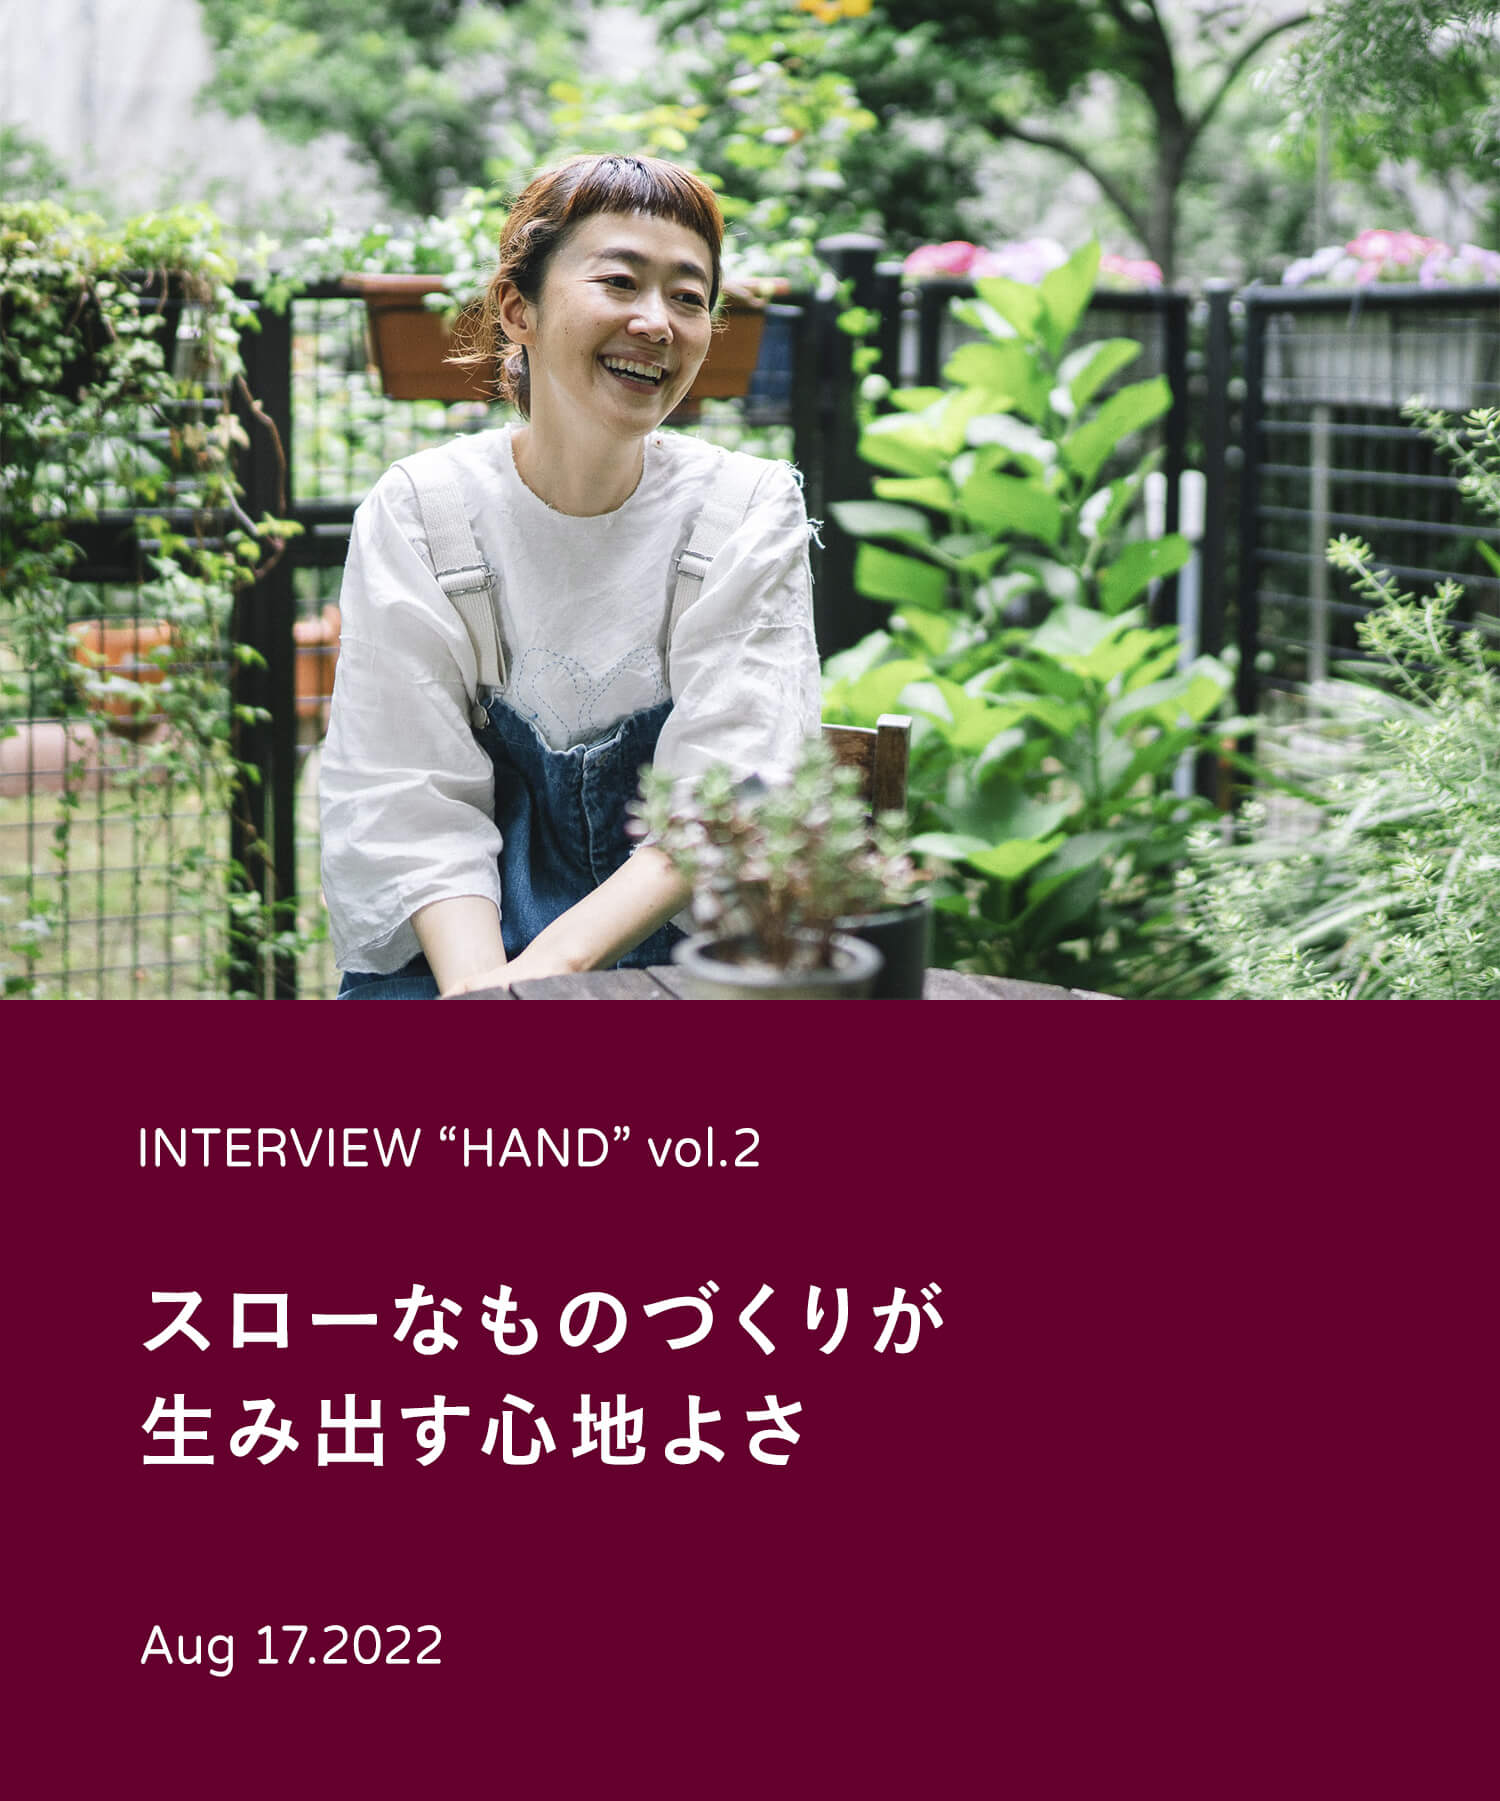 INTERVIEW “HAND” vol.2 スローなものづくりが生み出す心地よさ